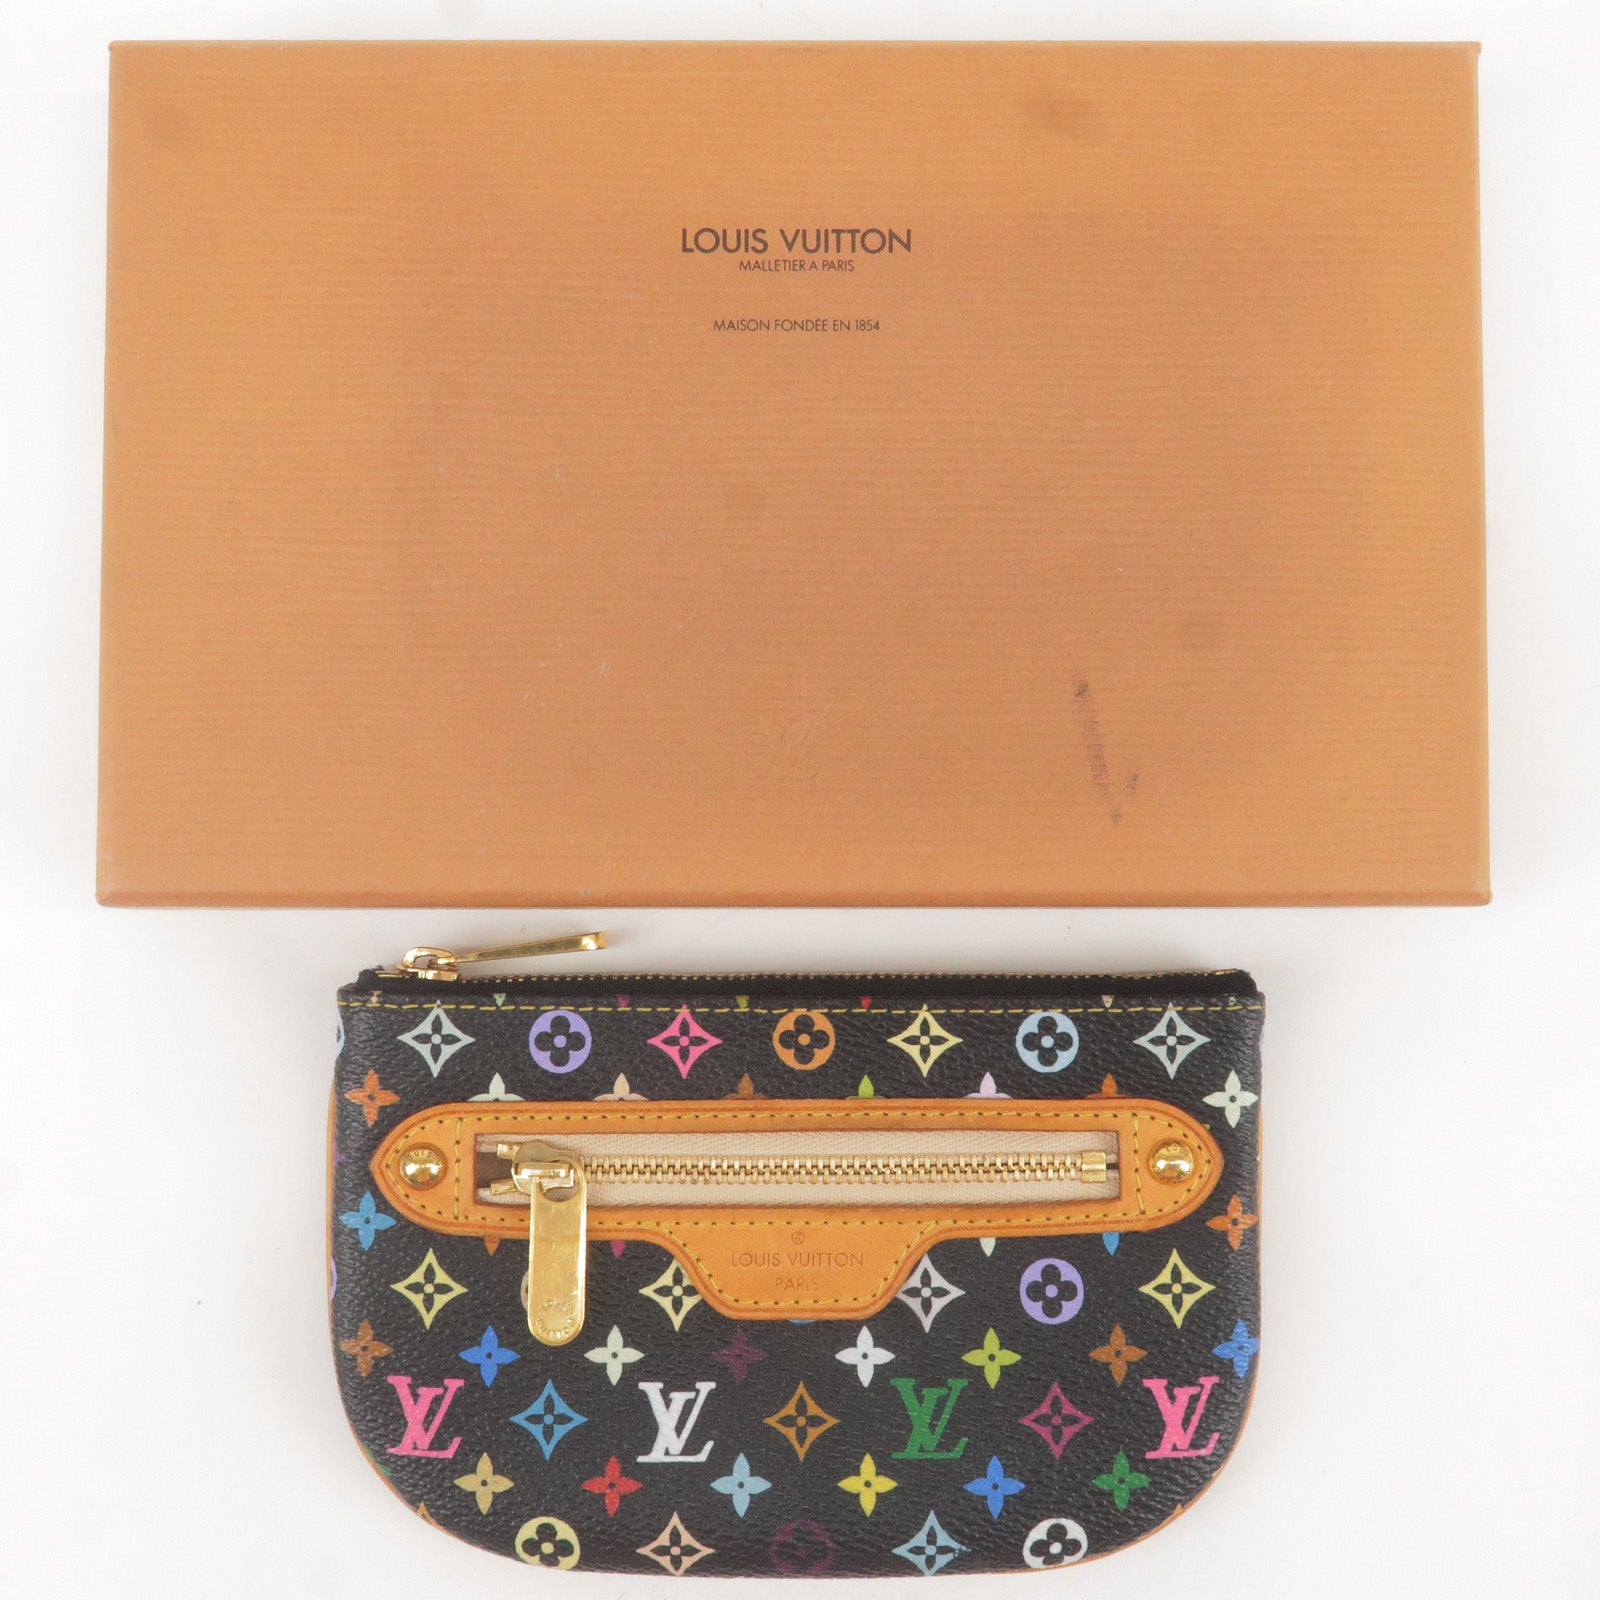 Noir - ep_vintage luxury Store - Pochette - Cles - Louis Vuitton